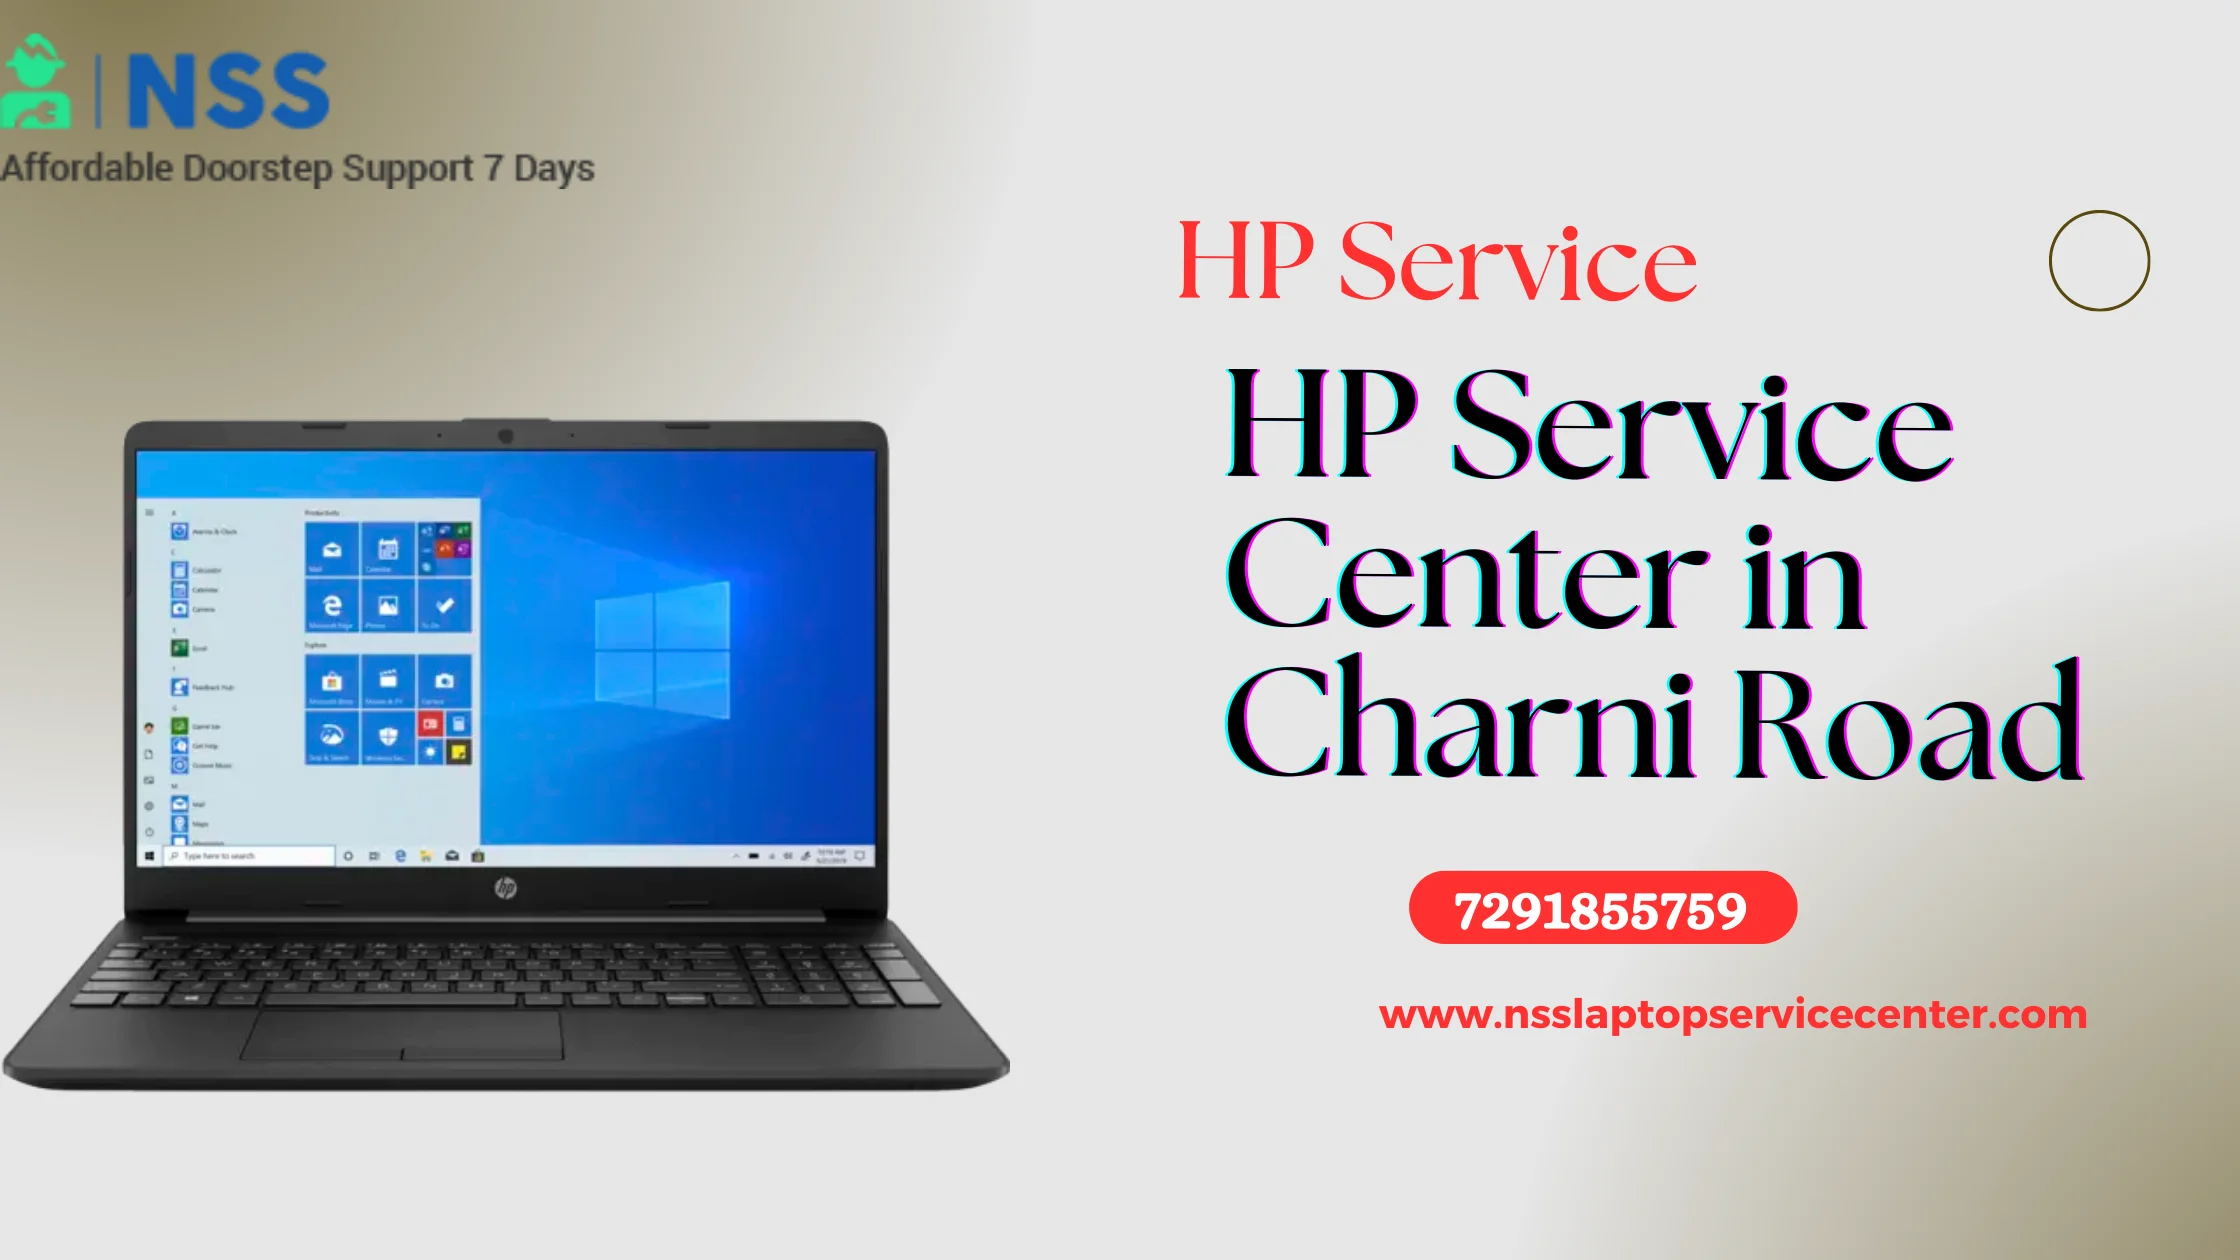 HP Service Center in Charni Road Near Mumbai